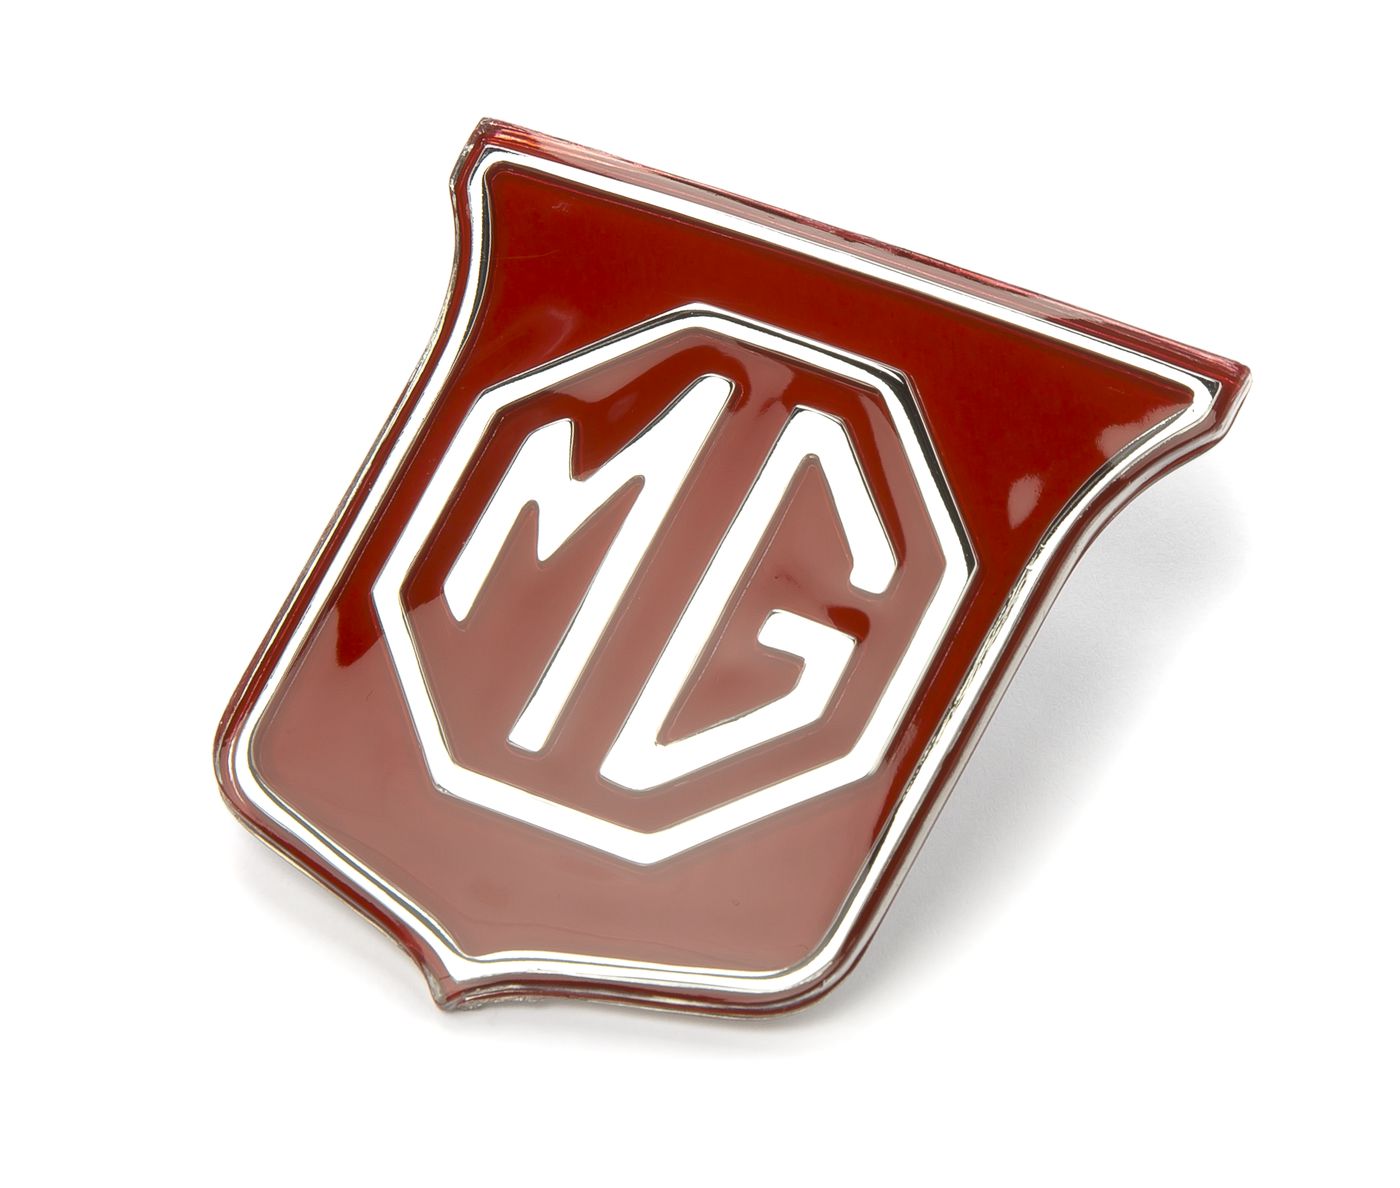 MG Emblem